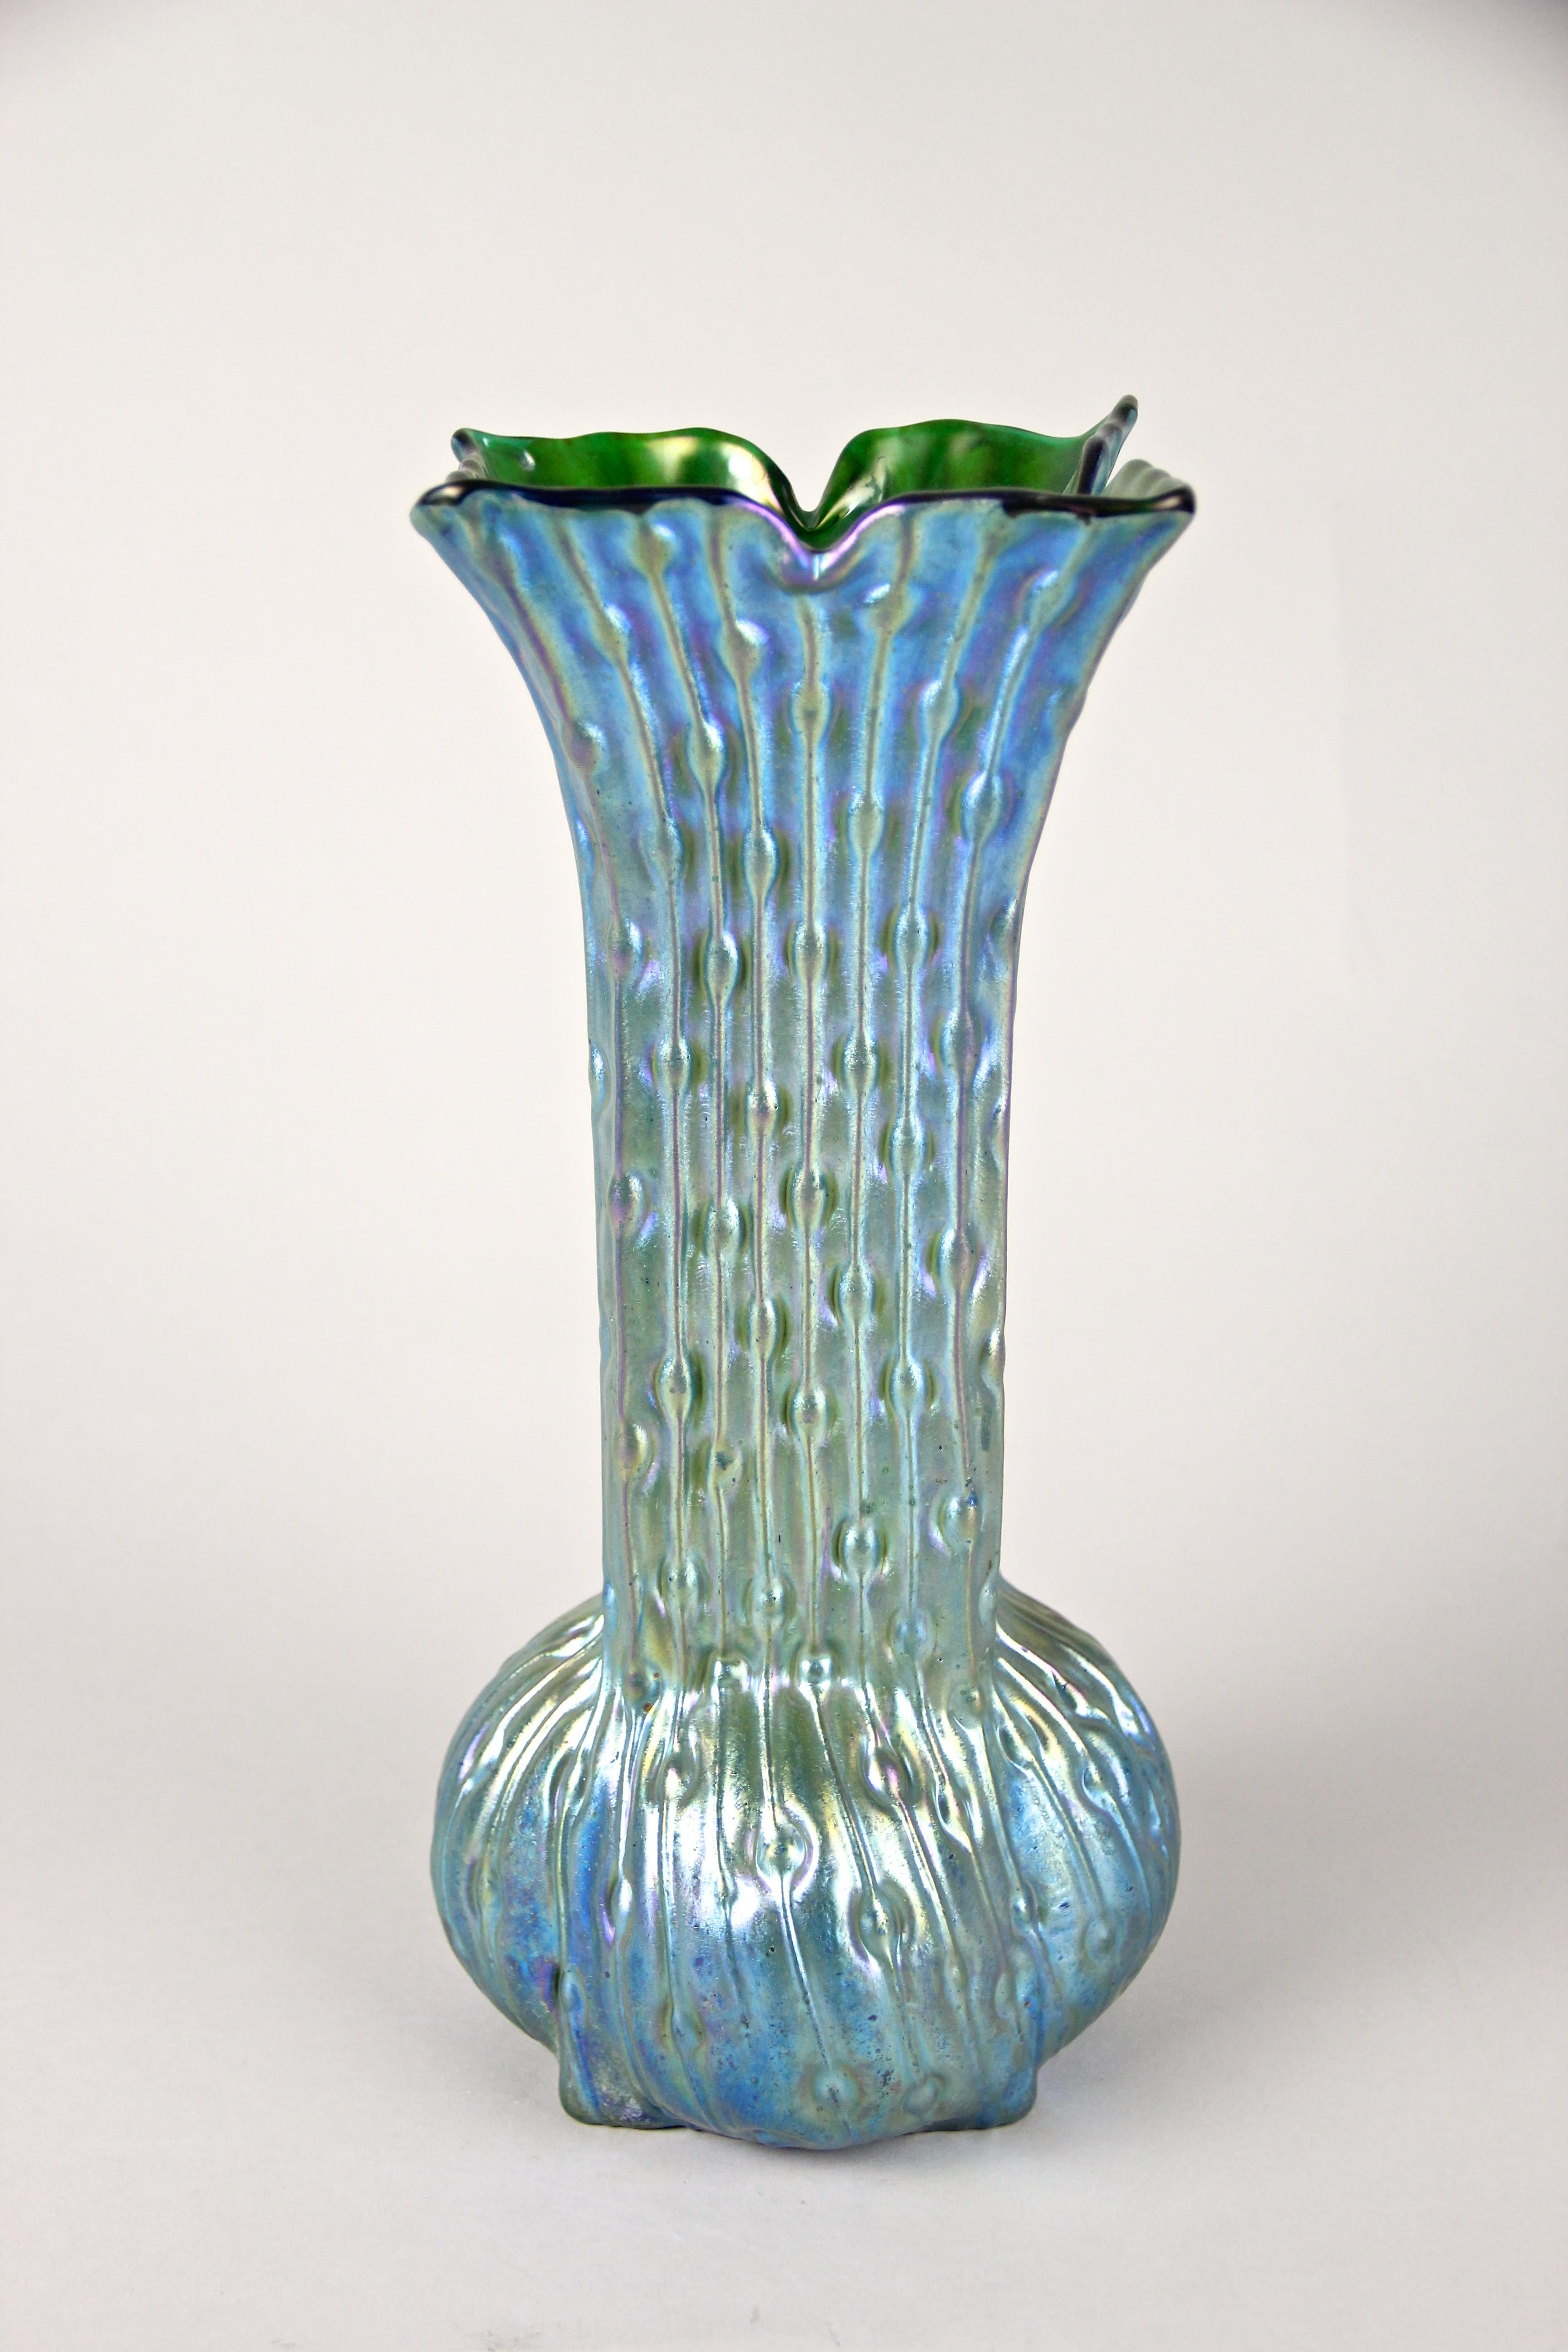 Außergewöhnliche Jugendstil-Glasvase von Loetz Witwe Klostermuehle, Bohemia, um 1902. Diese absolut seltene, unregelmäßige Loetz-Vase hat einen ungewöhnlich geformten Körper mit einem schönen grünen Glasboden. Das außergewöhnliche Dekor, das an das